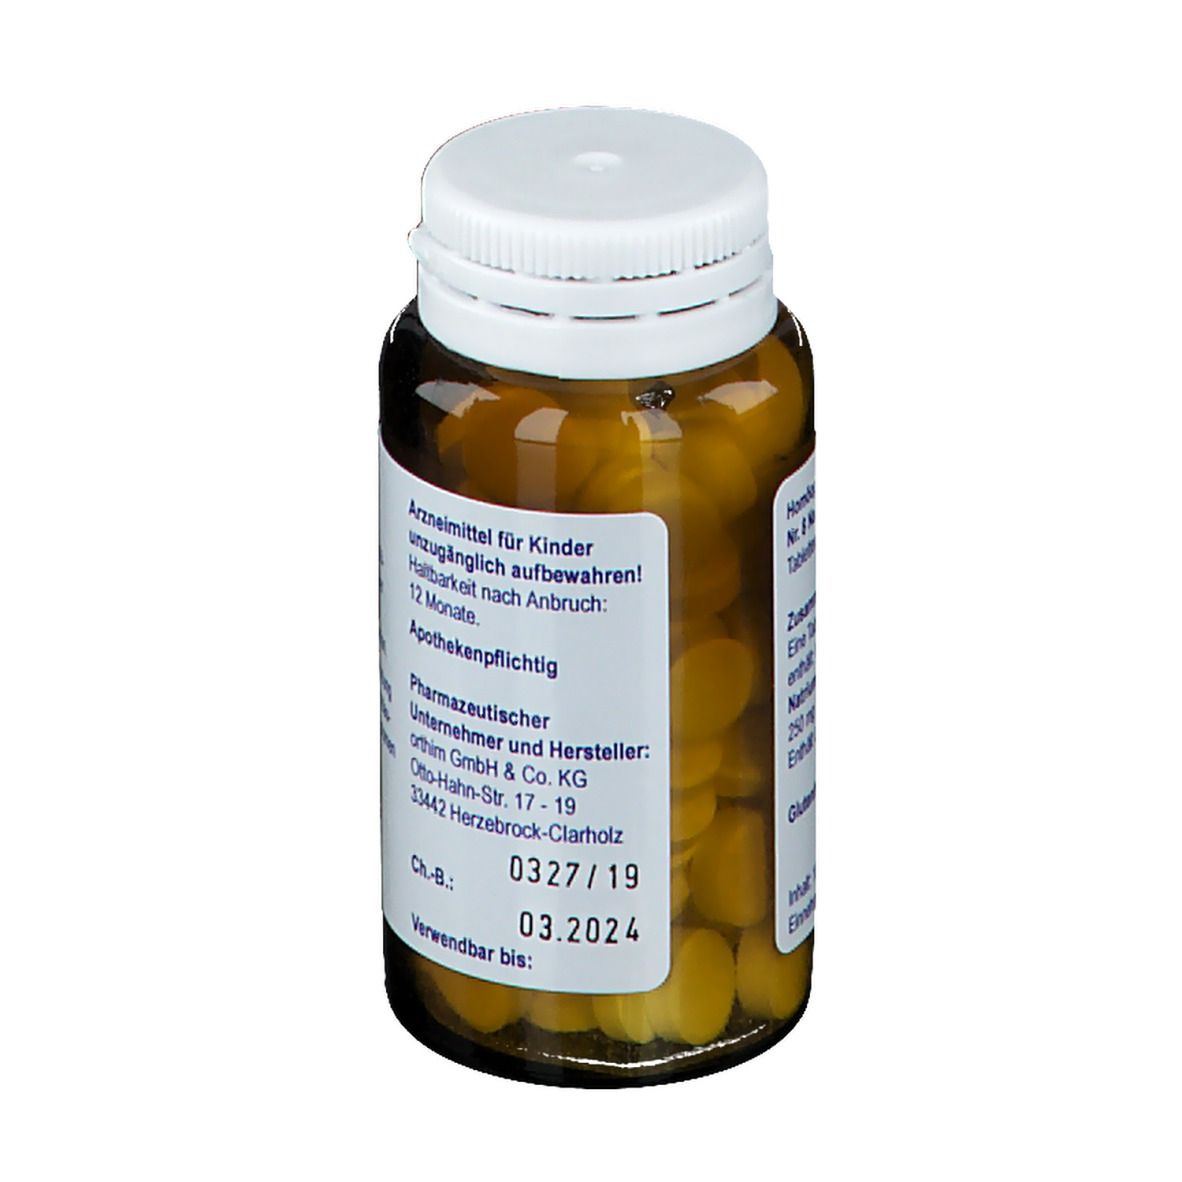 Biochemie orthim® Nr. 8 Natrium chloratum D6